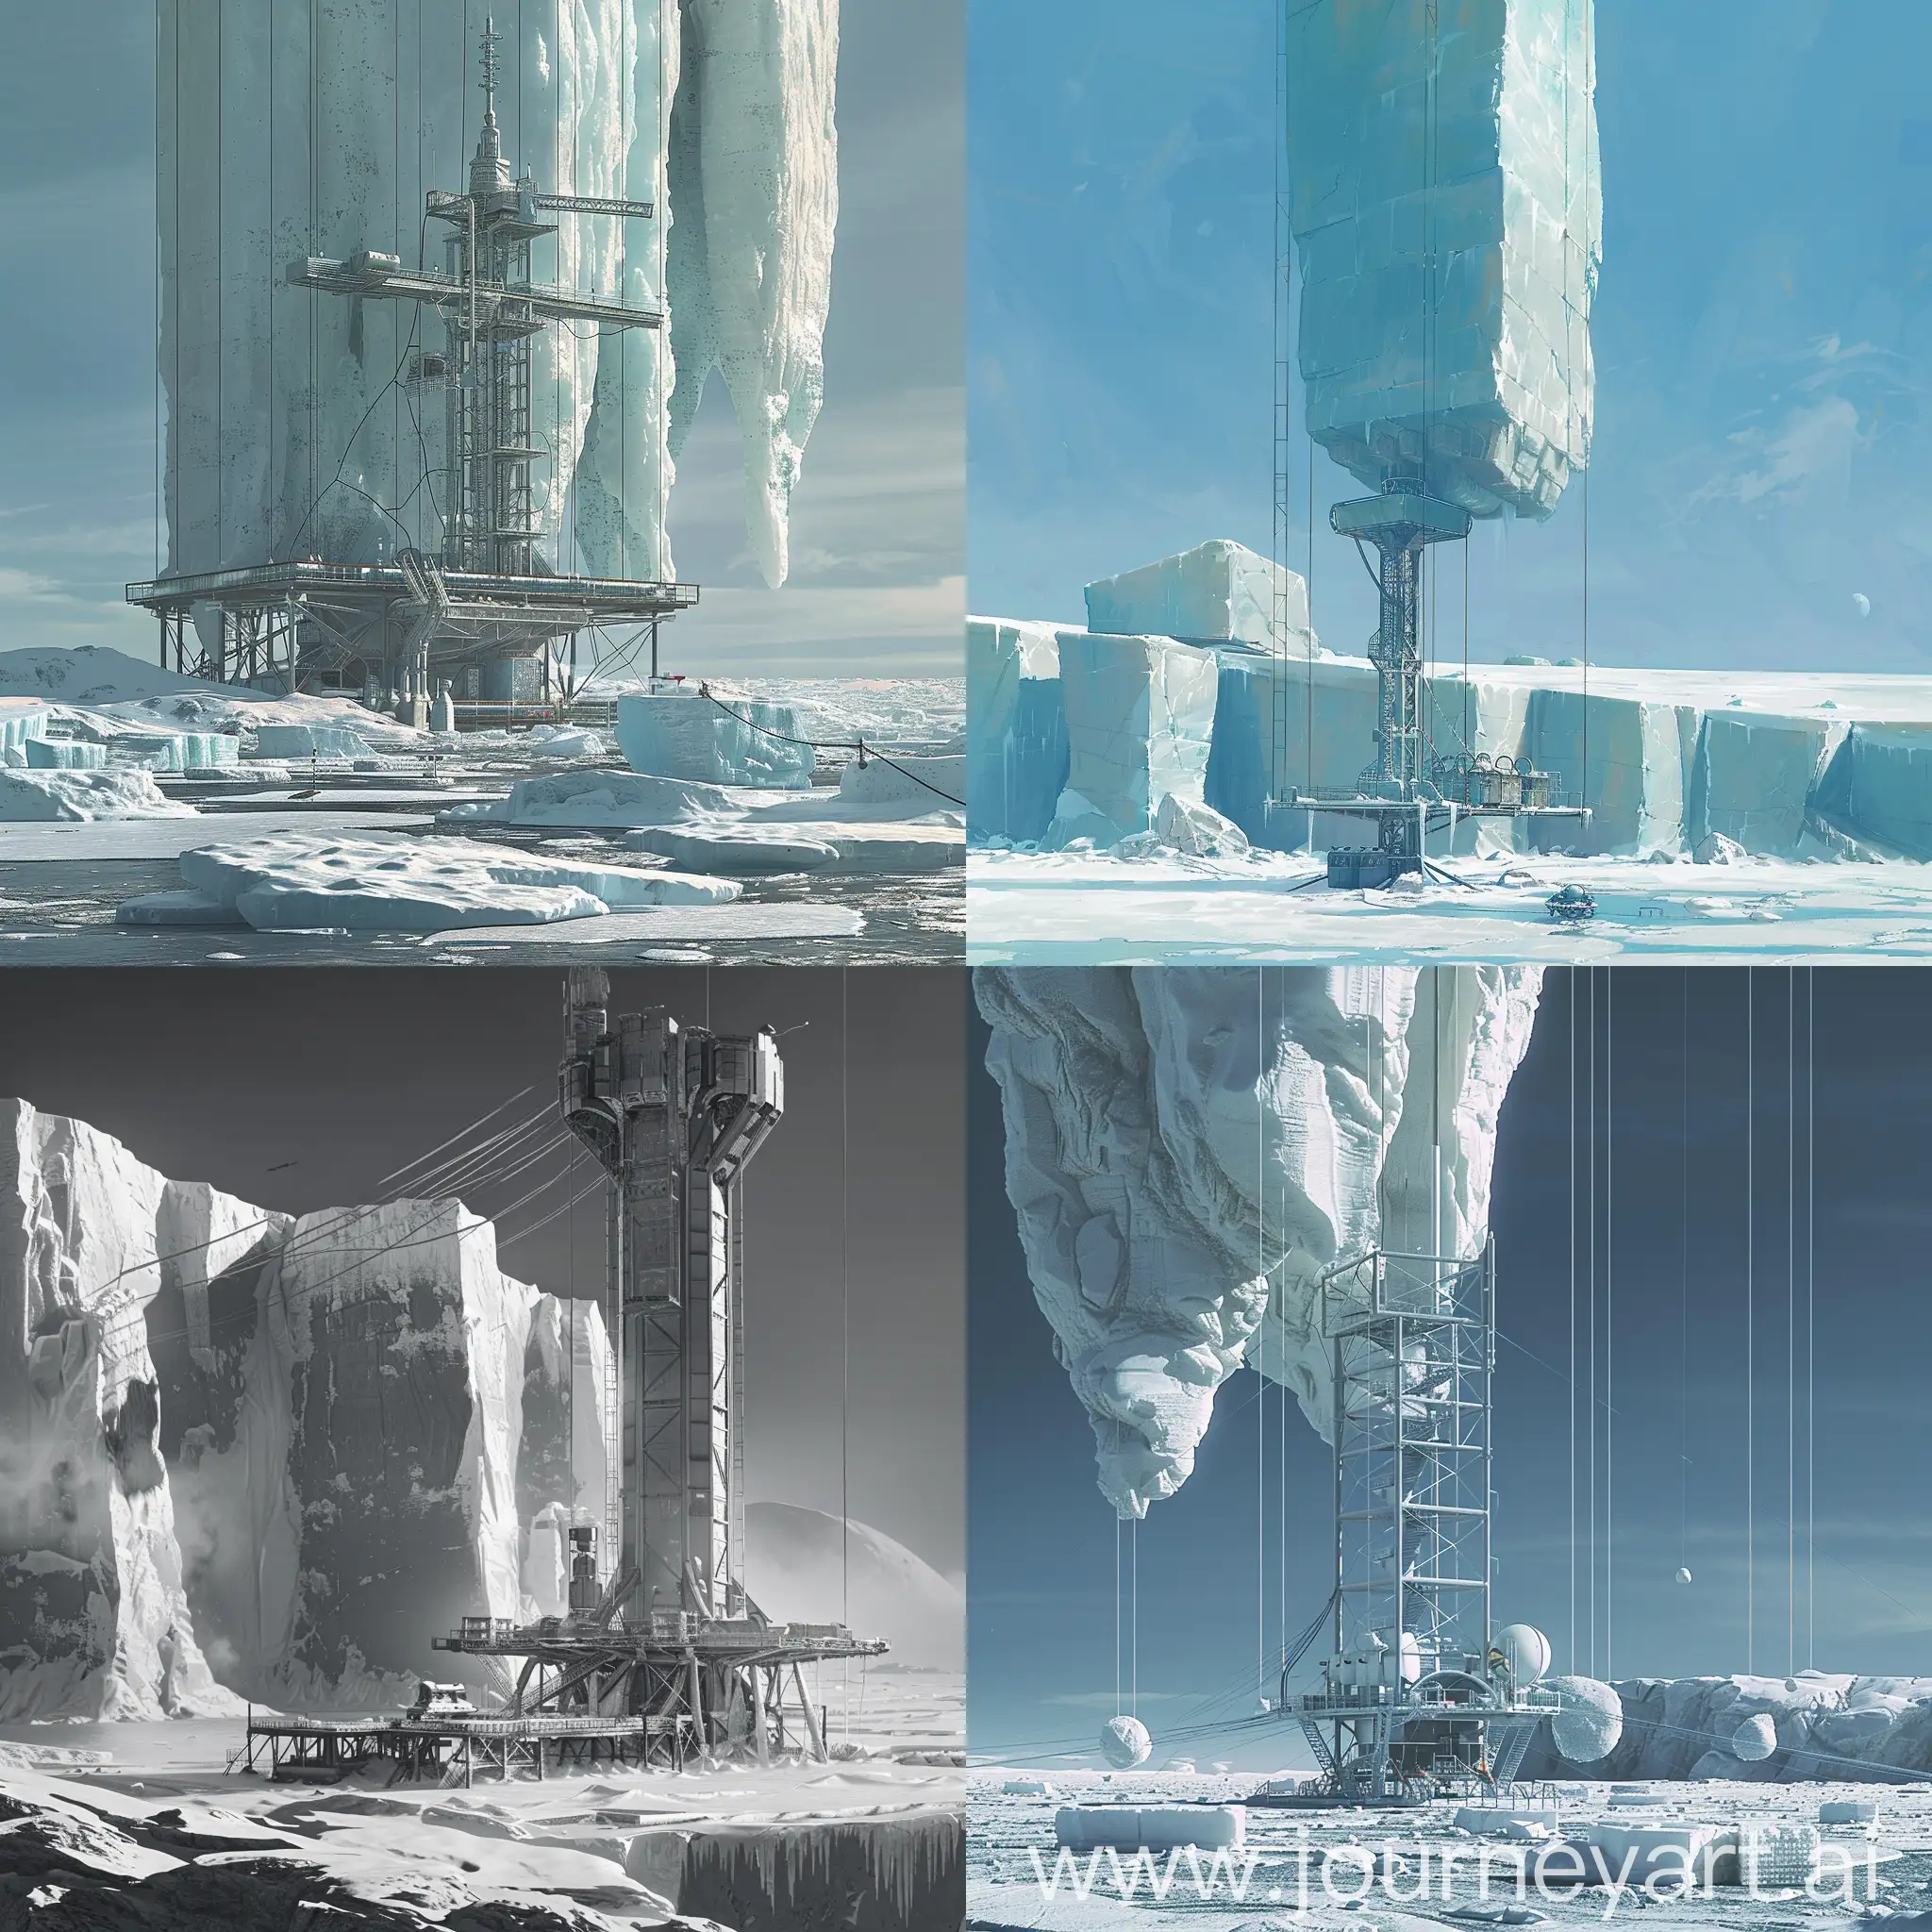 Планета Амальтея, ледяная равнина с огромными ледяными глыбами. посреди равнины стоит центр управления - это большая башня привязанная вантовыми конструкциями к равнине, а внизу площадка для приземления и взлёта космических кораблей